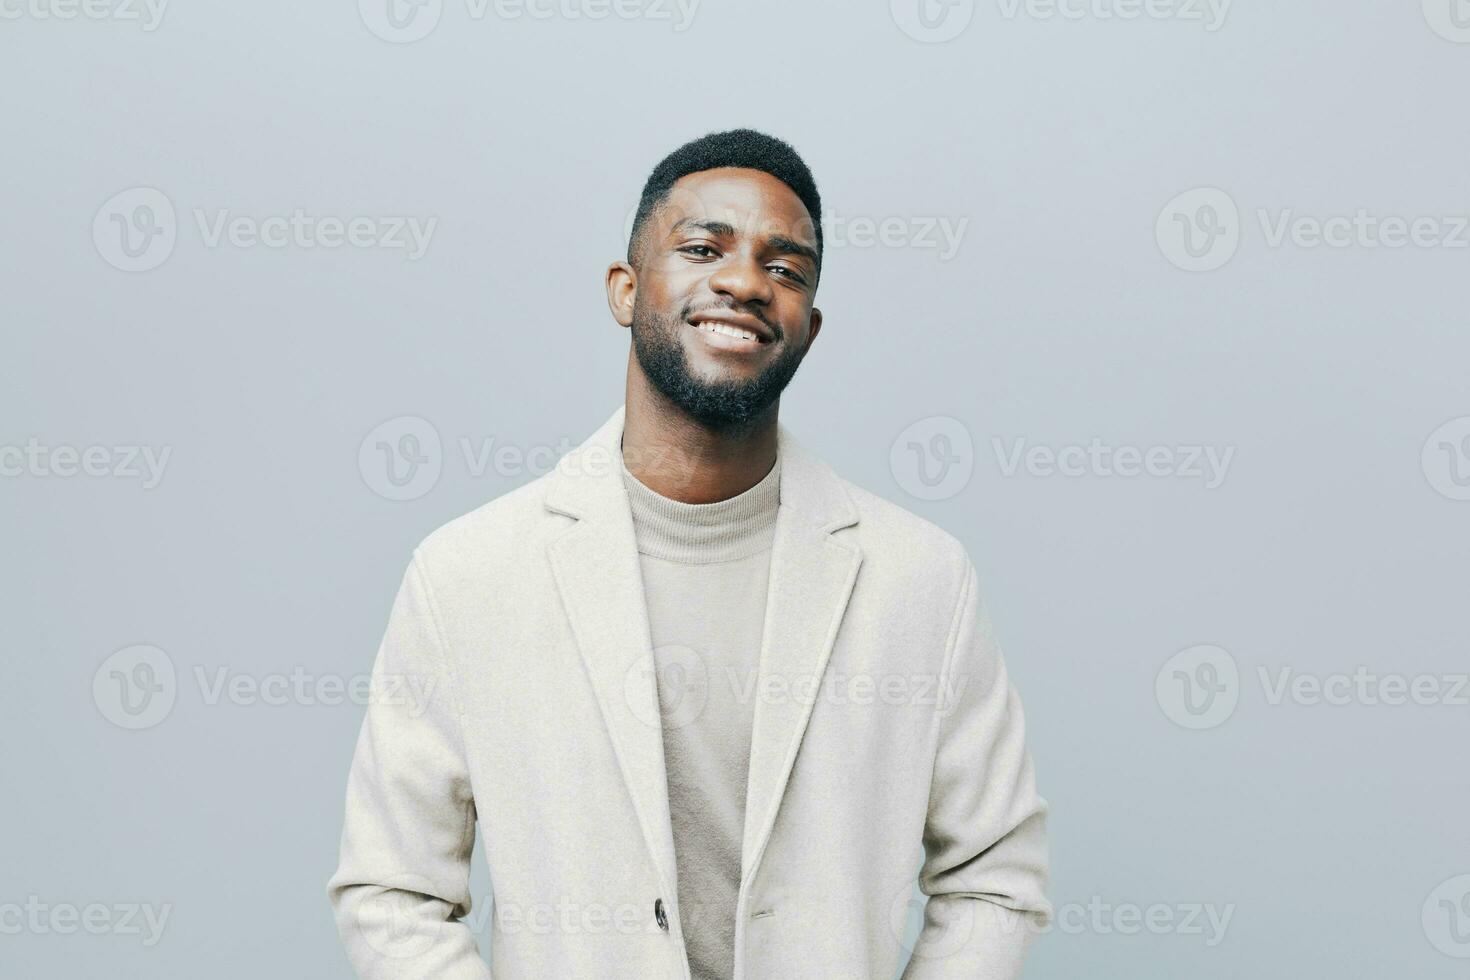 Mens Amerikaans vriendelijk zwart gelukkig emotie glimlachen portret zelfverzekerd Afrikaanse glimlach jong foto